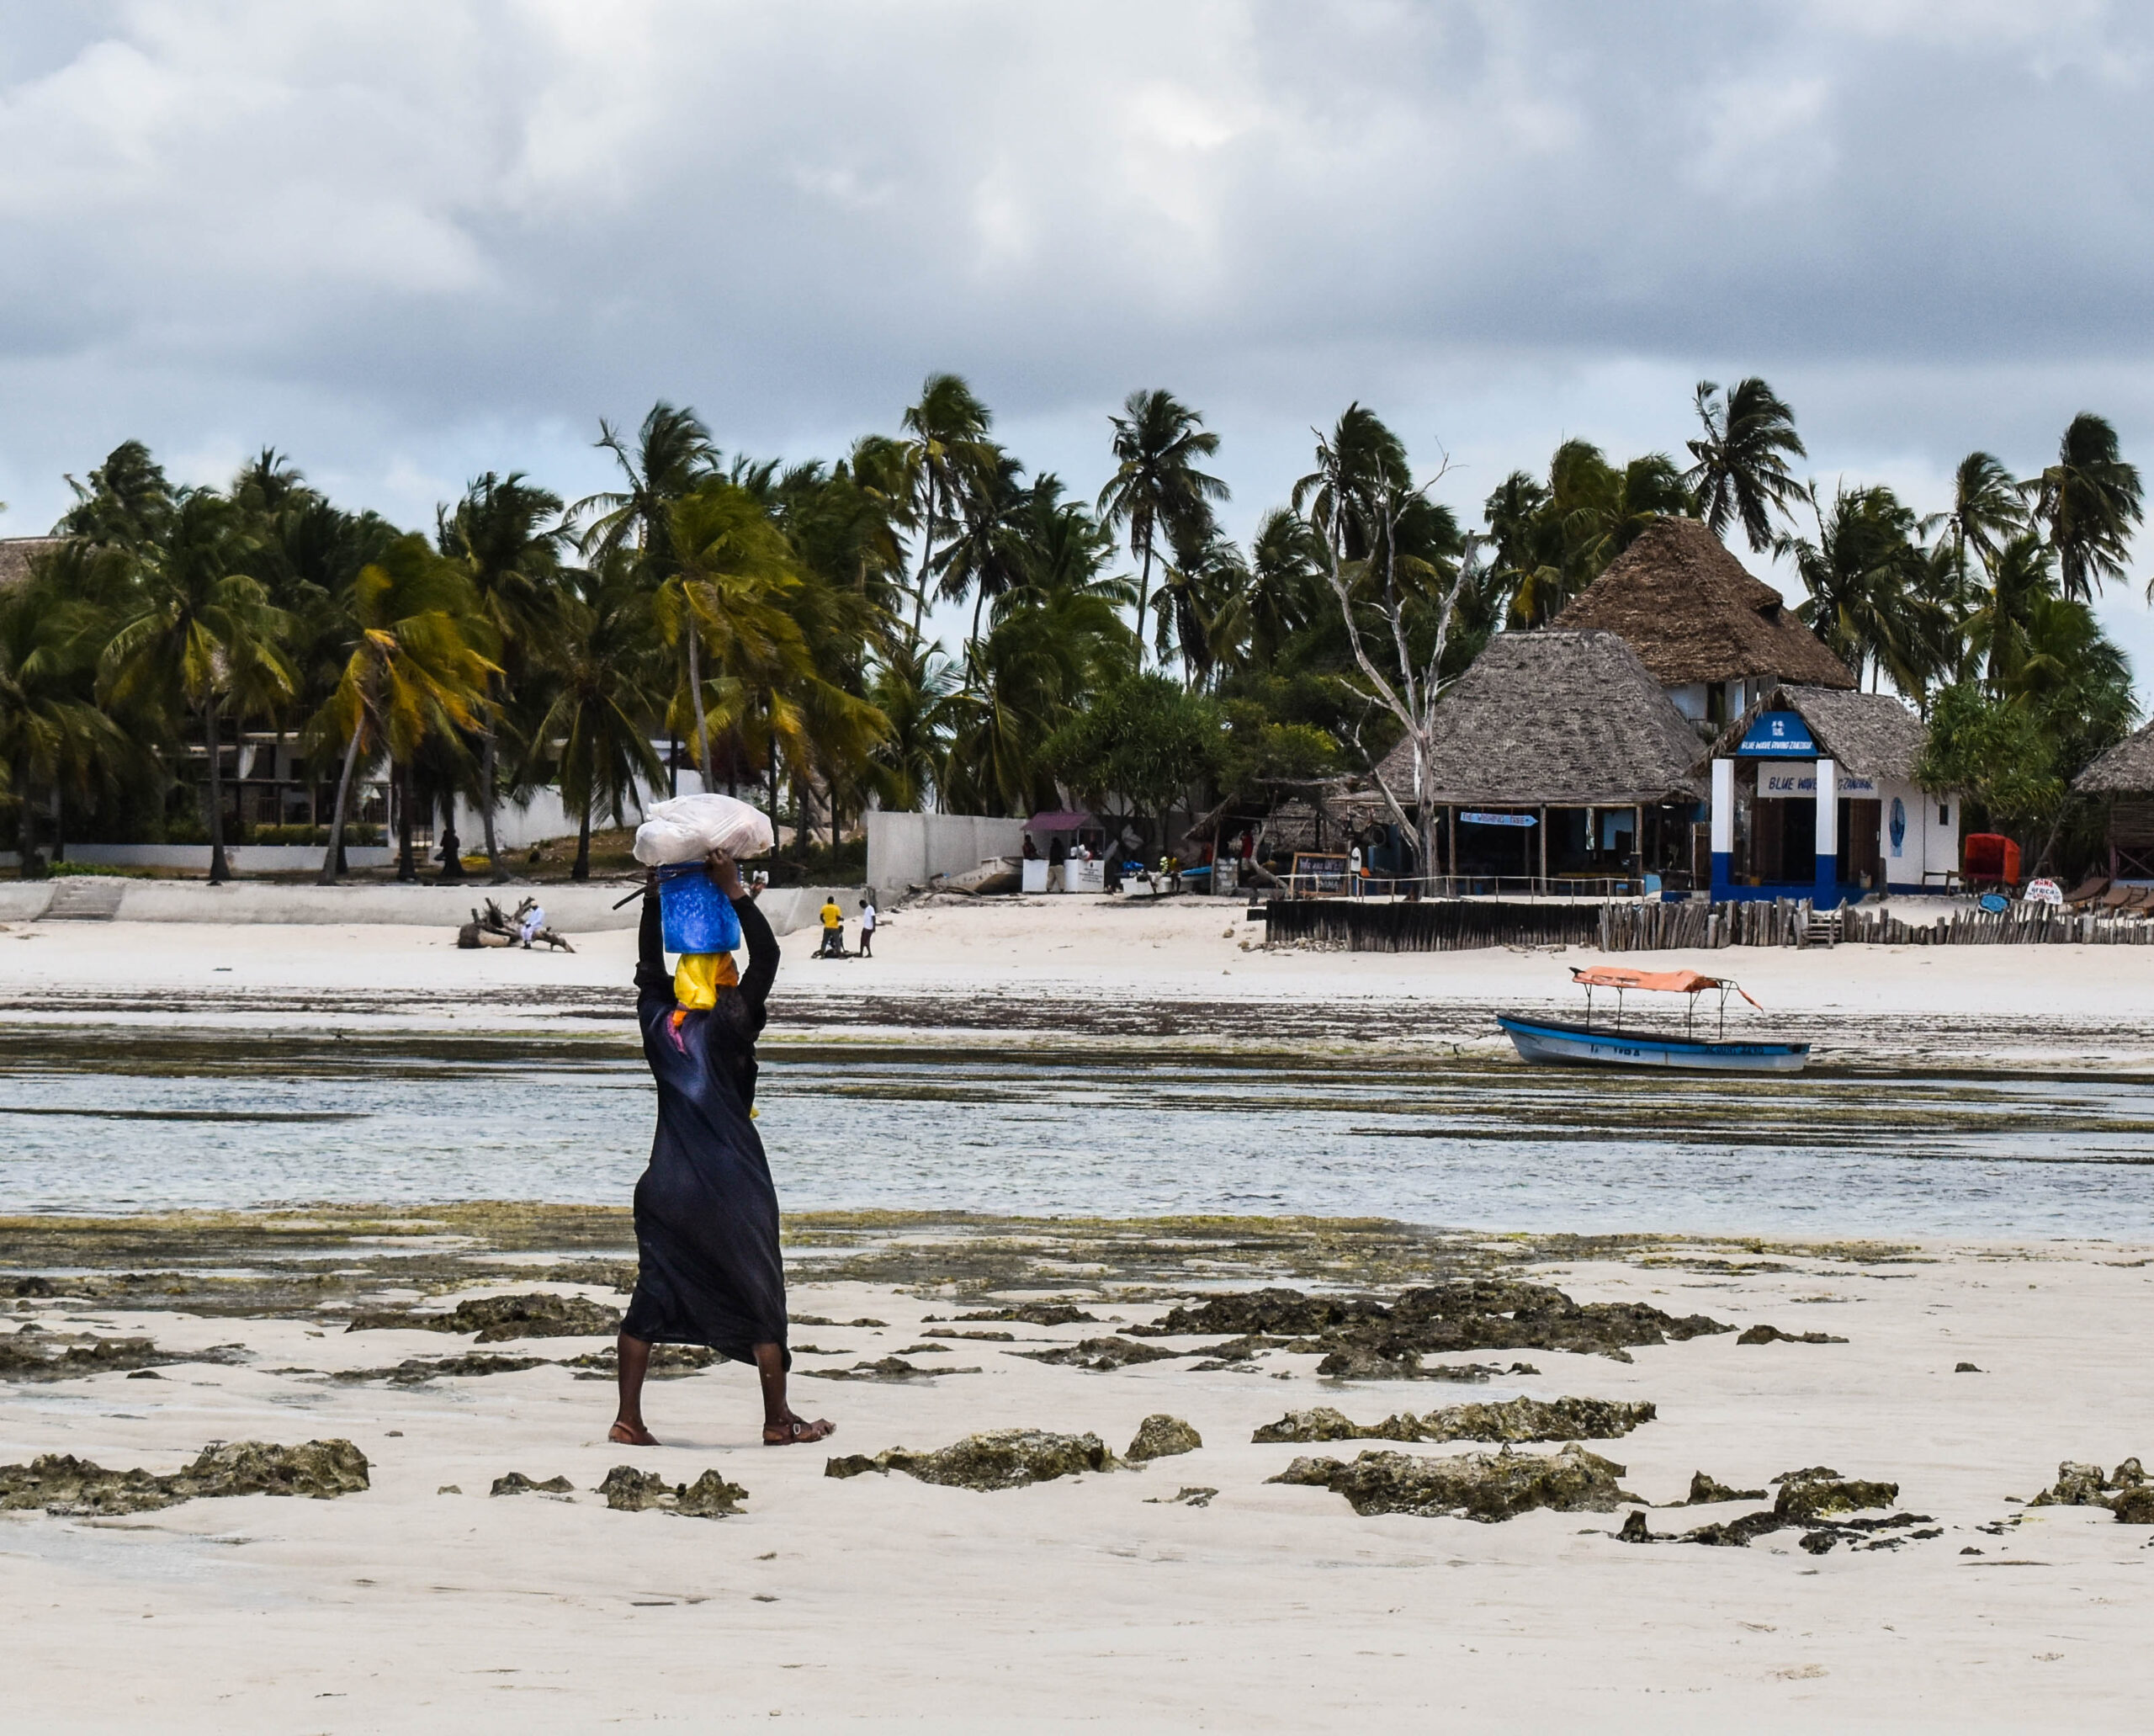 Femme de dos, qui porte un sac sur sa tête, sur la plage à Zanzibar. Au loin des palmiers et quelques paillotes